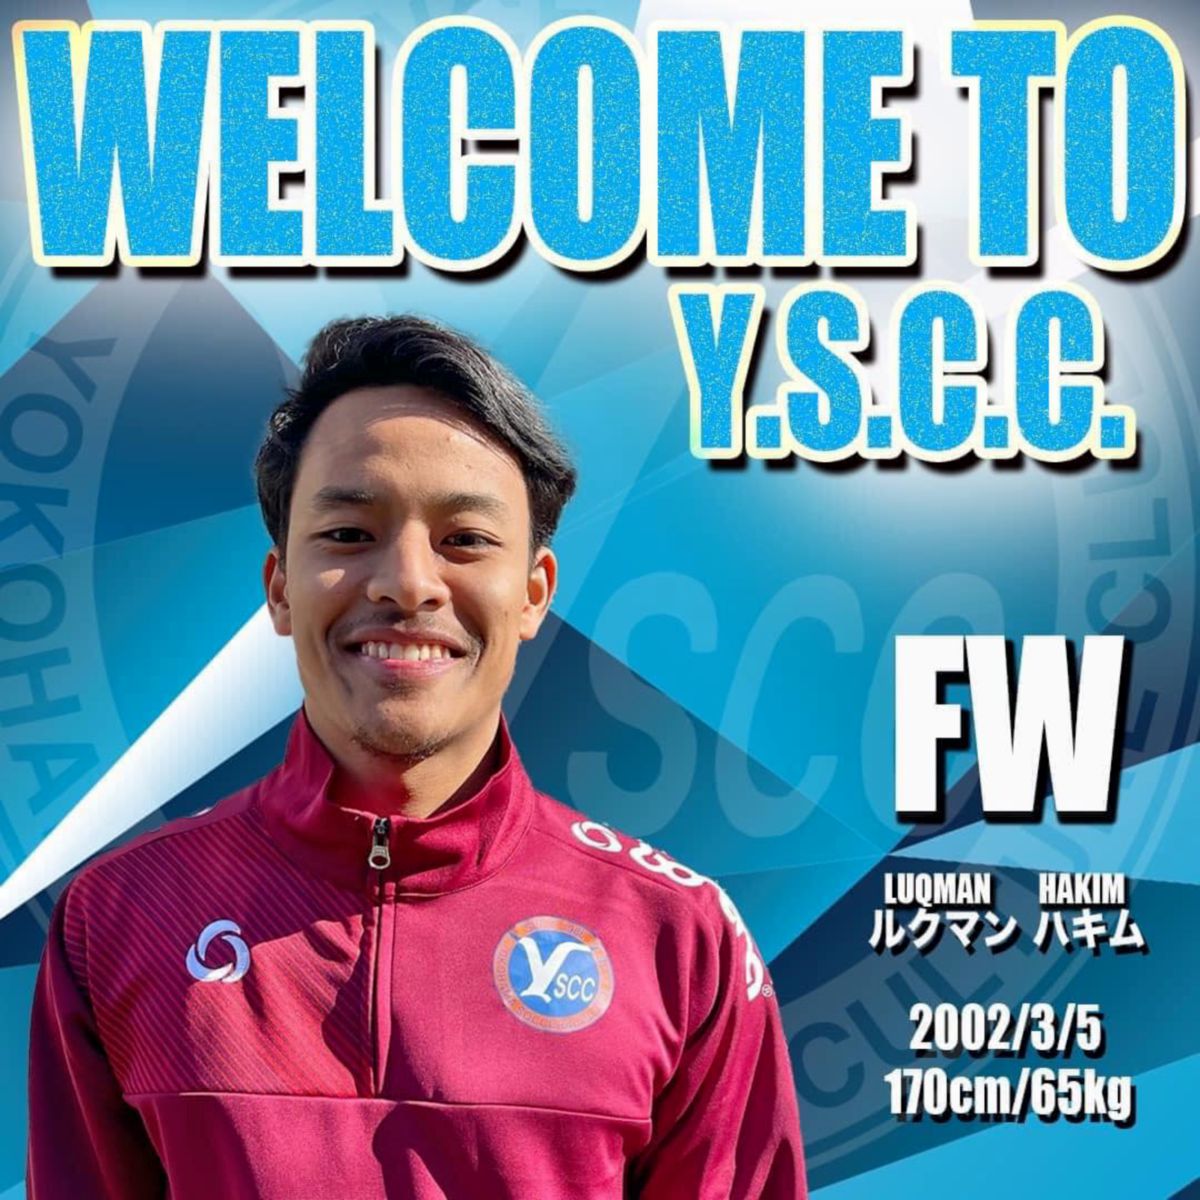 POSTER memperkenalkan Luqman oleh kelab divisyen tiga Jepun, Yokohama SCC. FOTO YOKOHAMA SCC